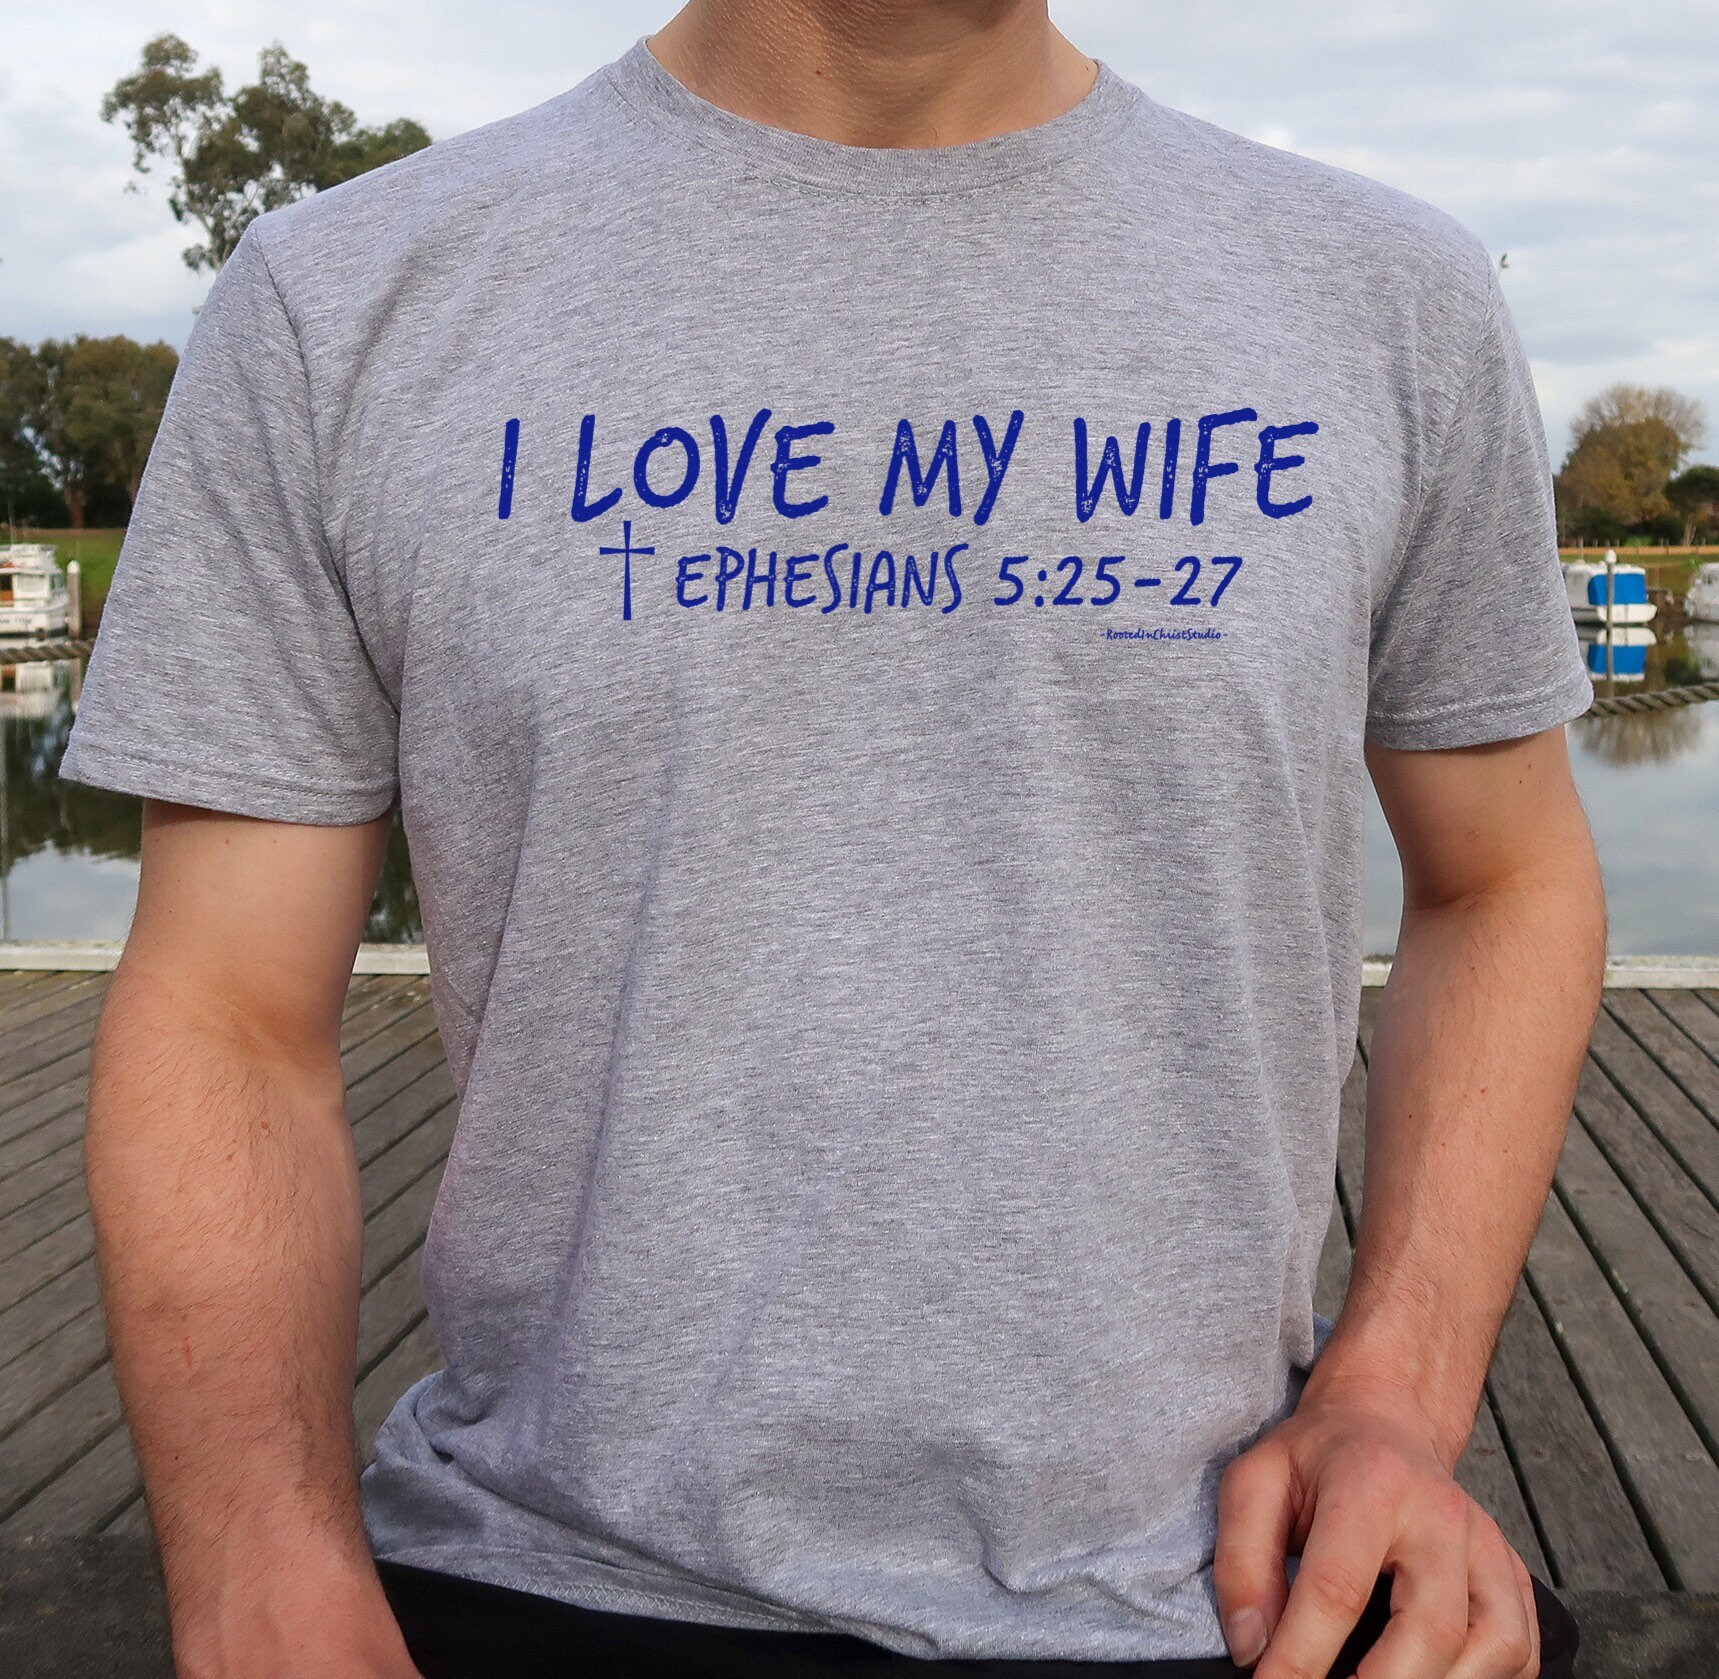 I Love My Wife Shirt, Ephemden 525-27, Verheiratete Shirts, Tolles Frauen Hochzeitshemden, Hochzeitshemden von RootedInChristStudio